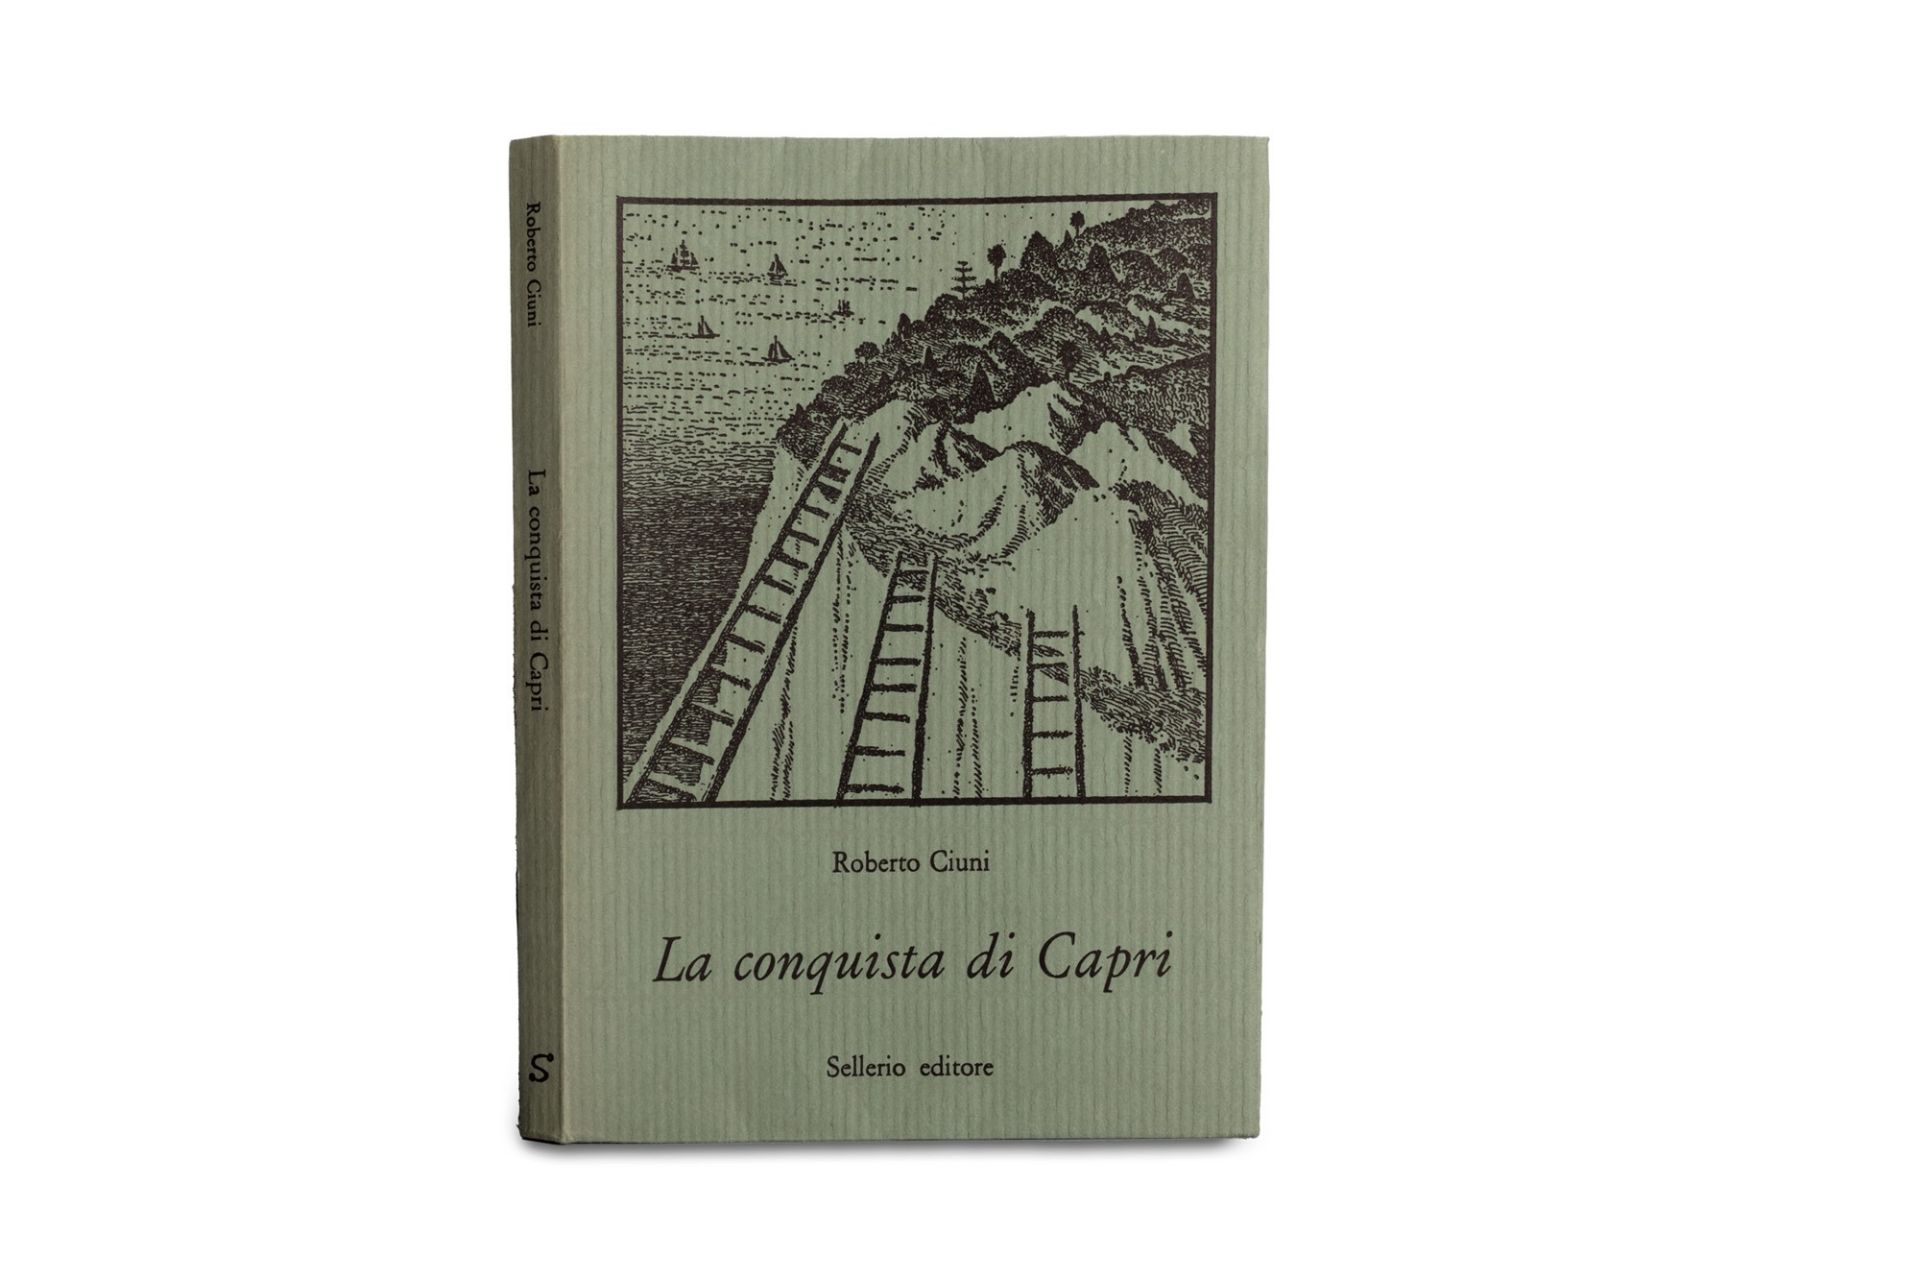 Libro d'artista - Ciuni, Roberto - The conquest of Capri - Image 4 of 4